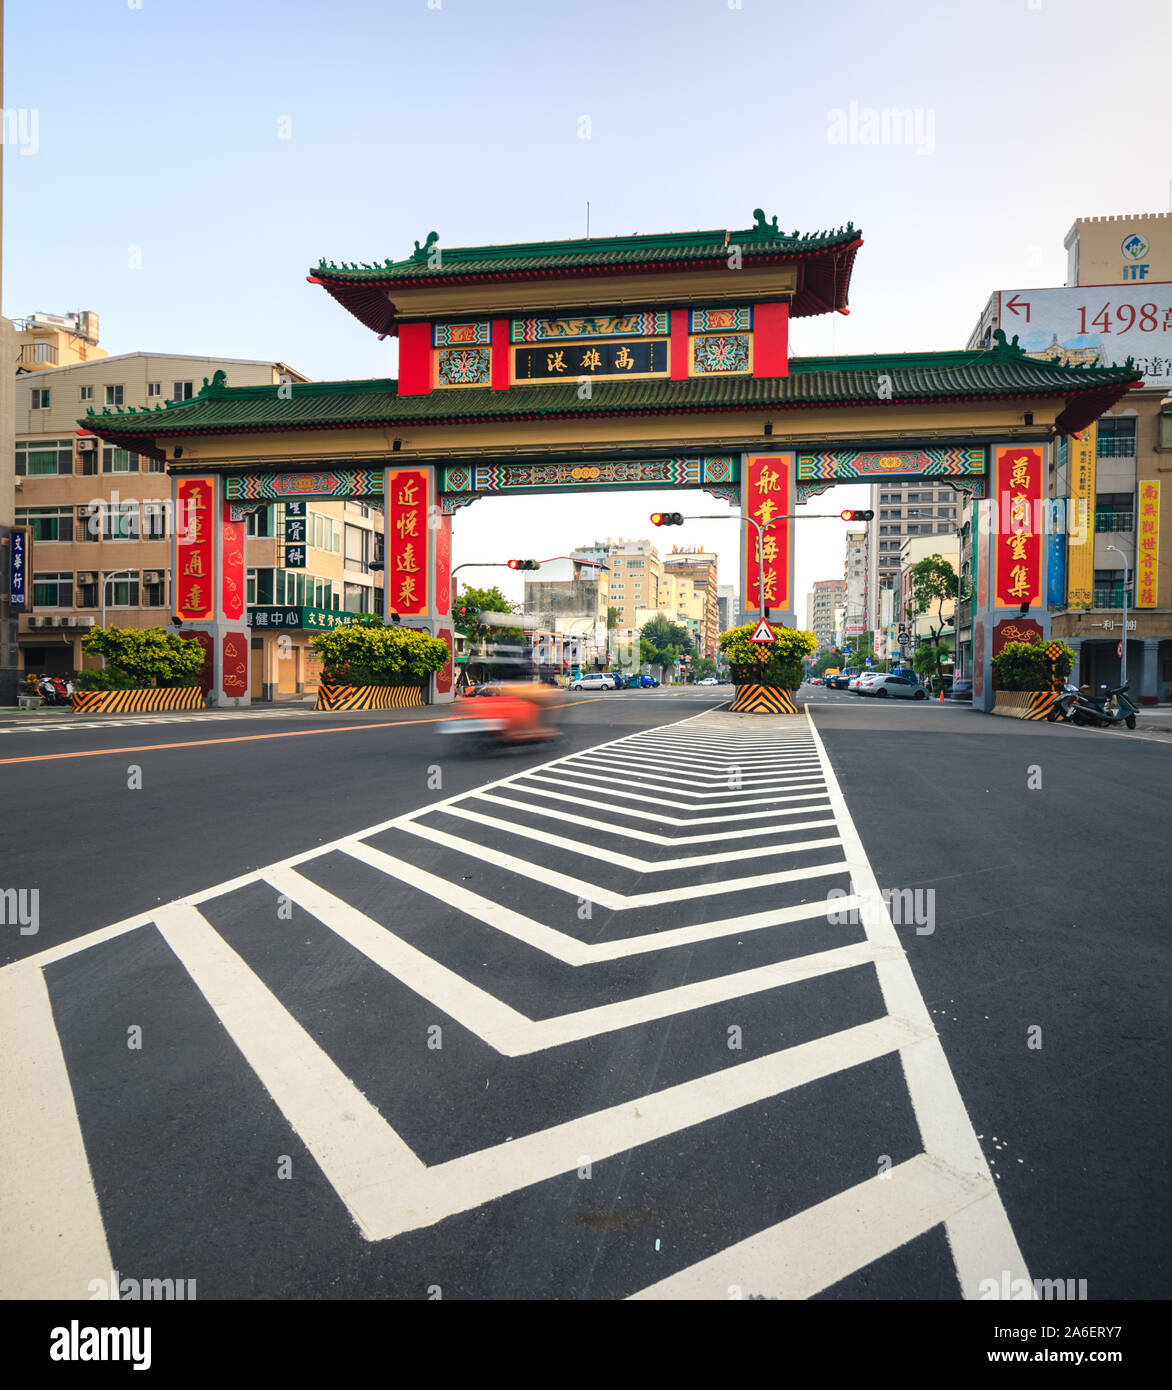 La ciudad de Kaohsiung, Taiwán Foto de stock